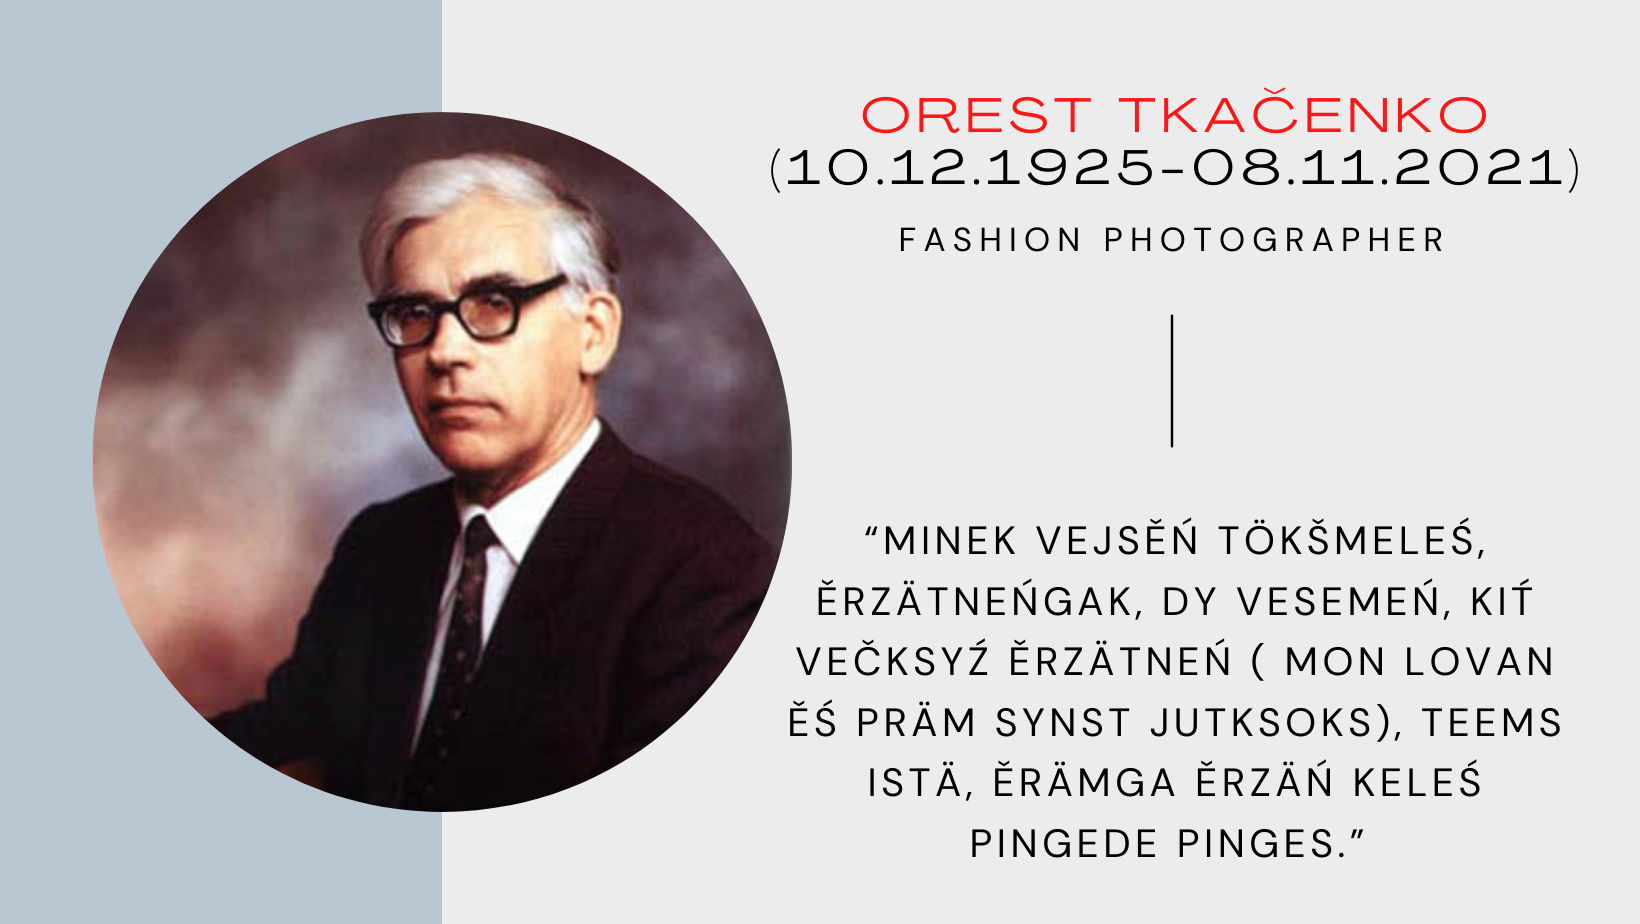 Умер известный лингвист Орест Ткаченко